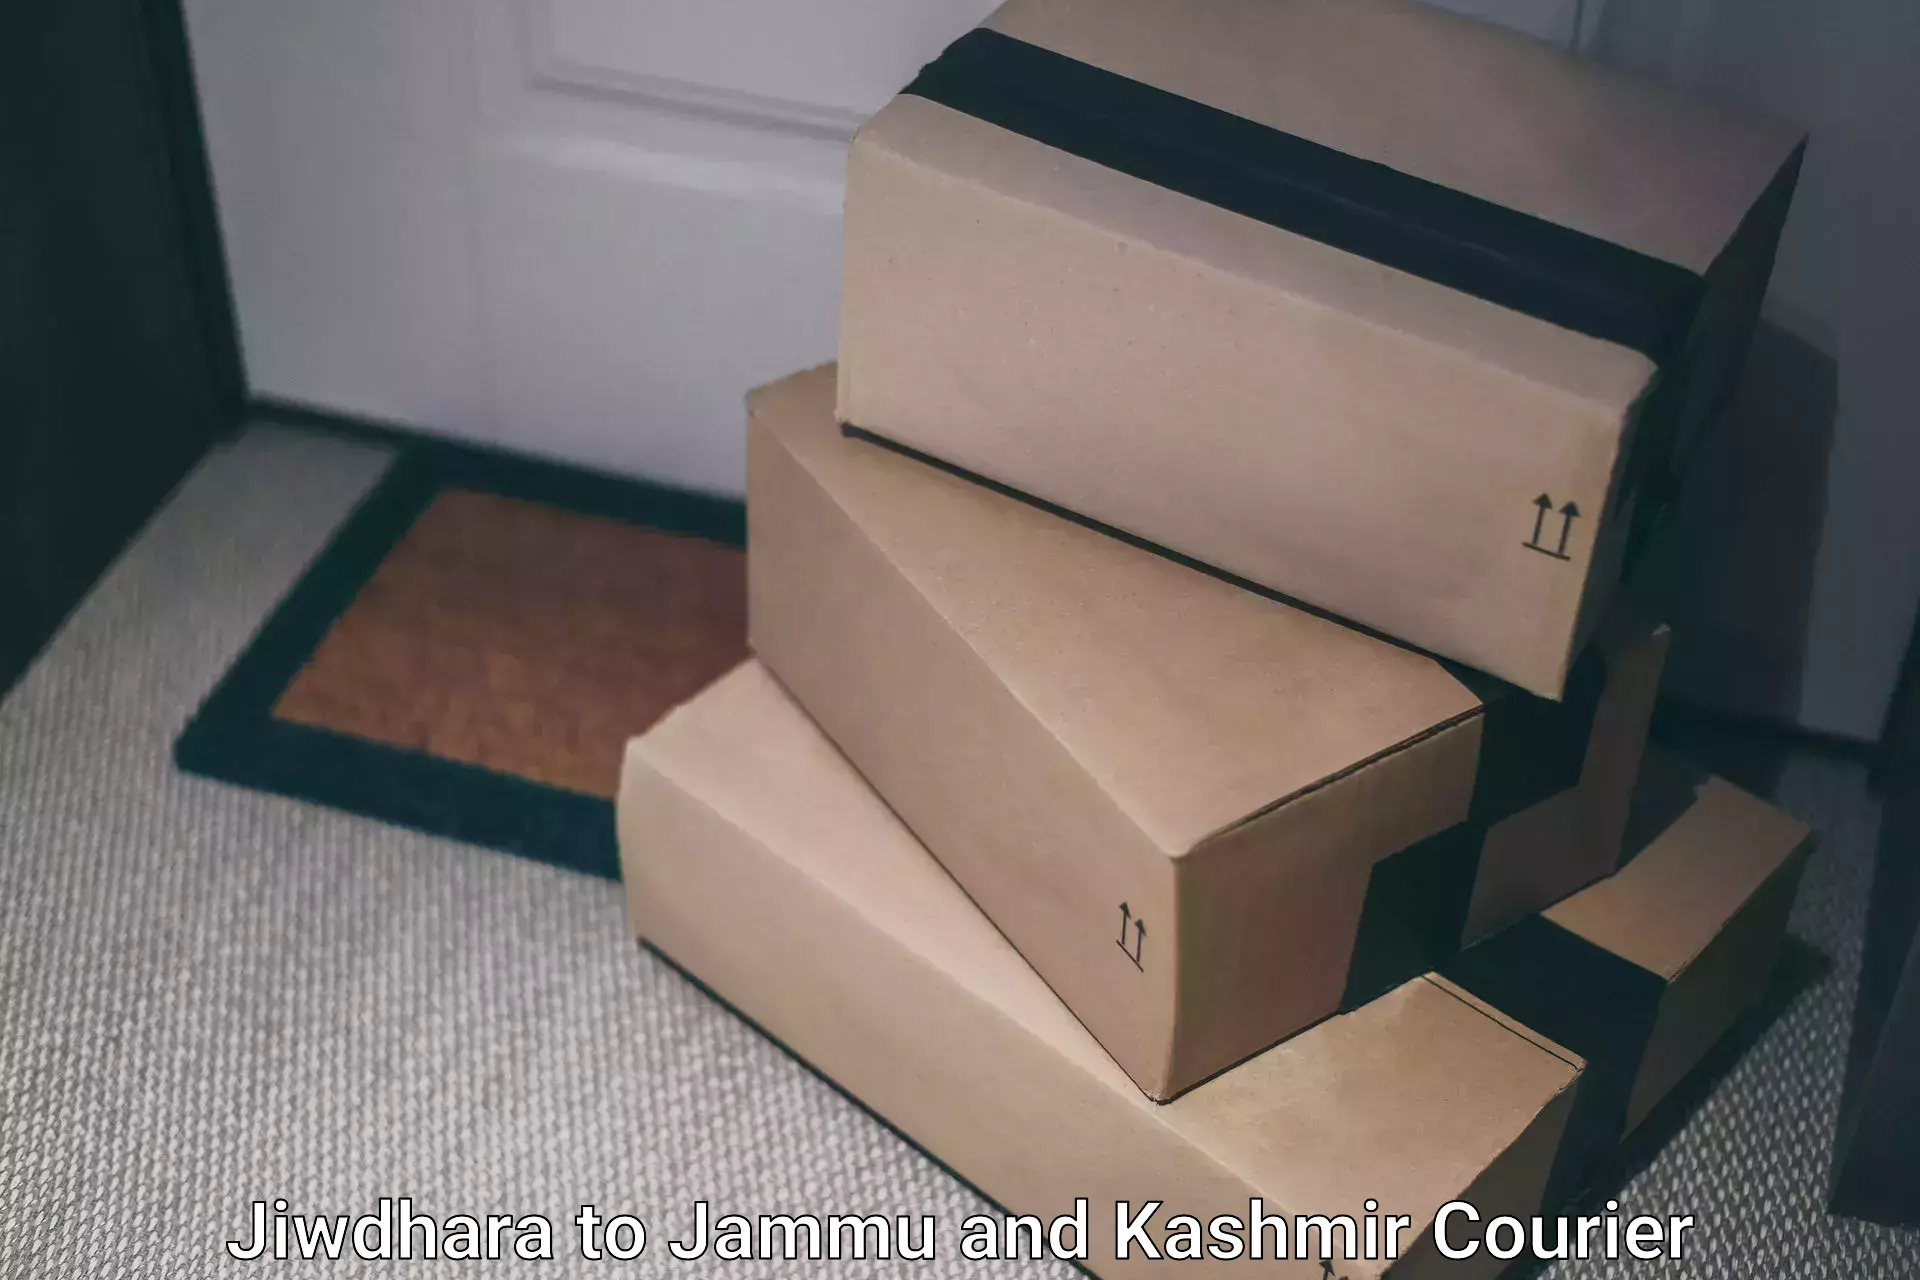 Express logistics service Jiwdhara to Jammu and Kashmir